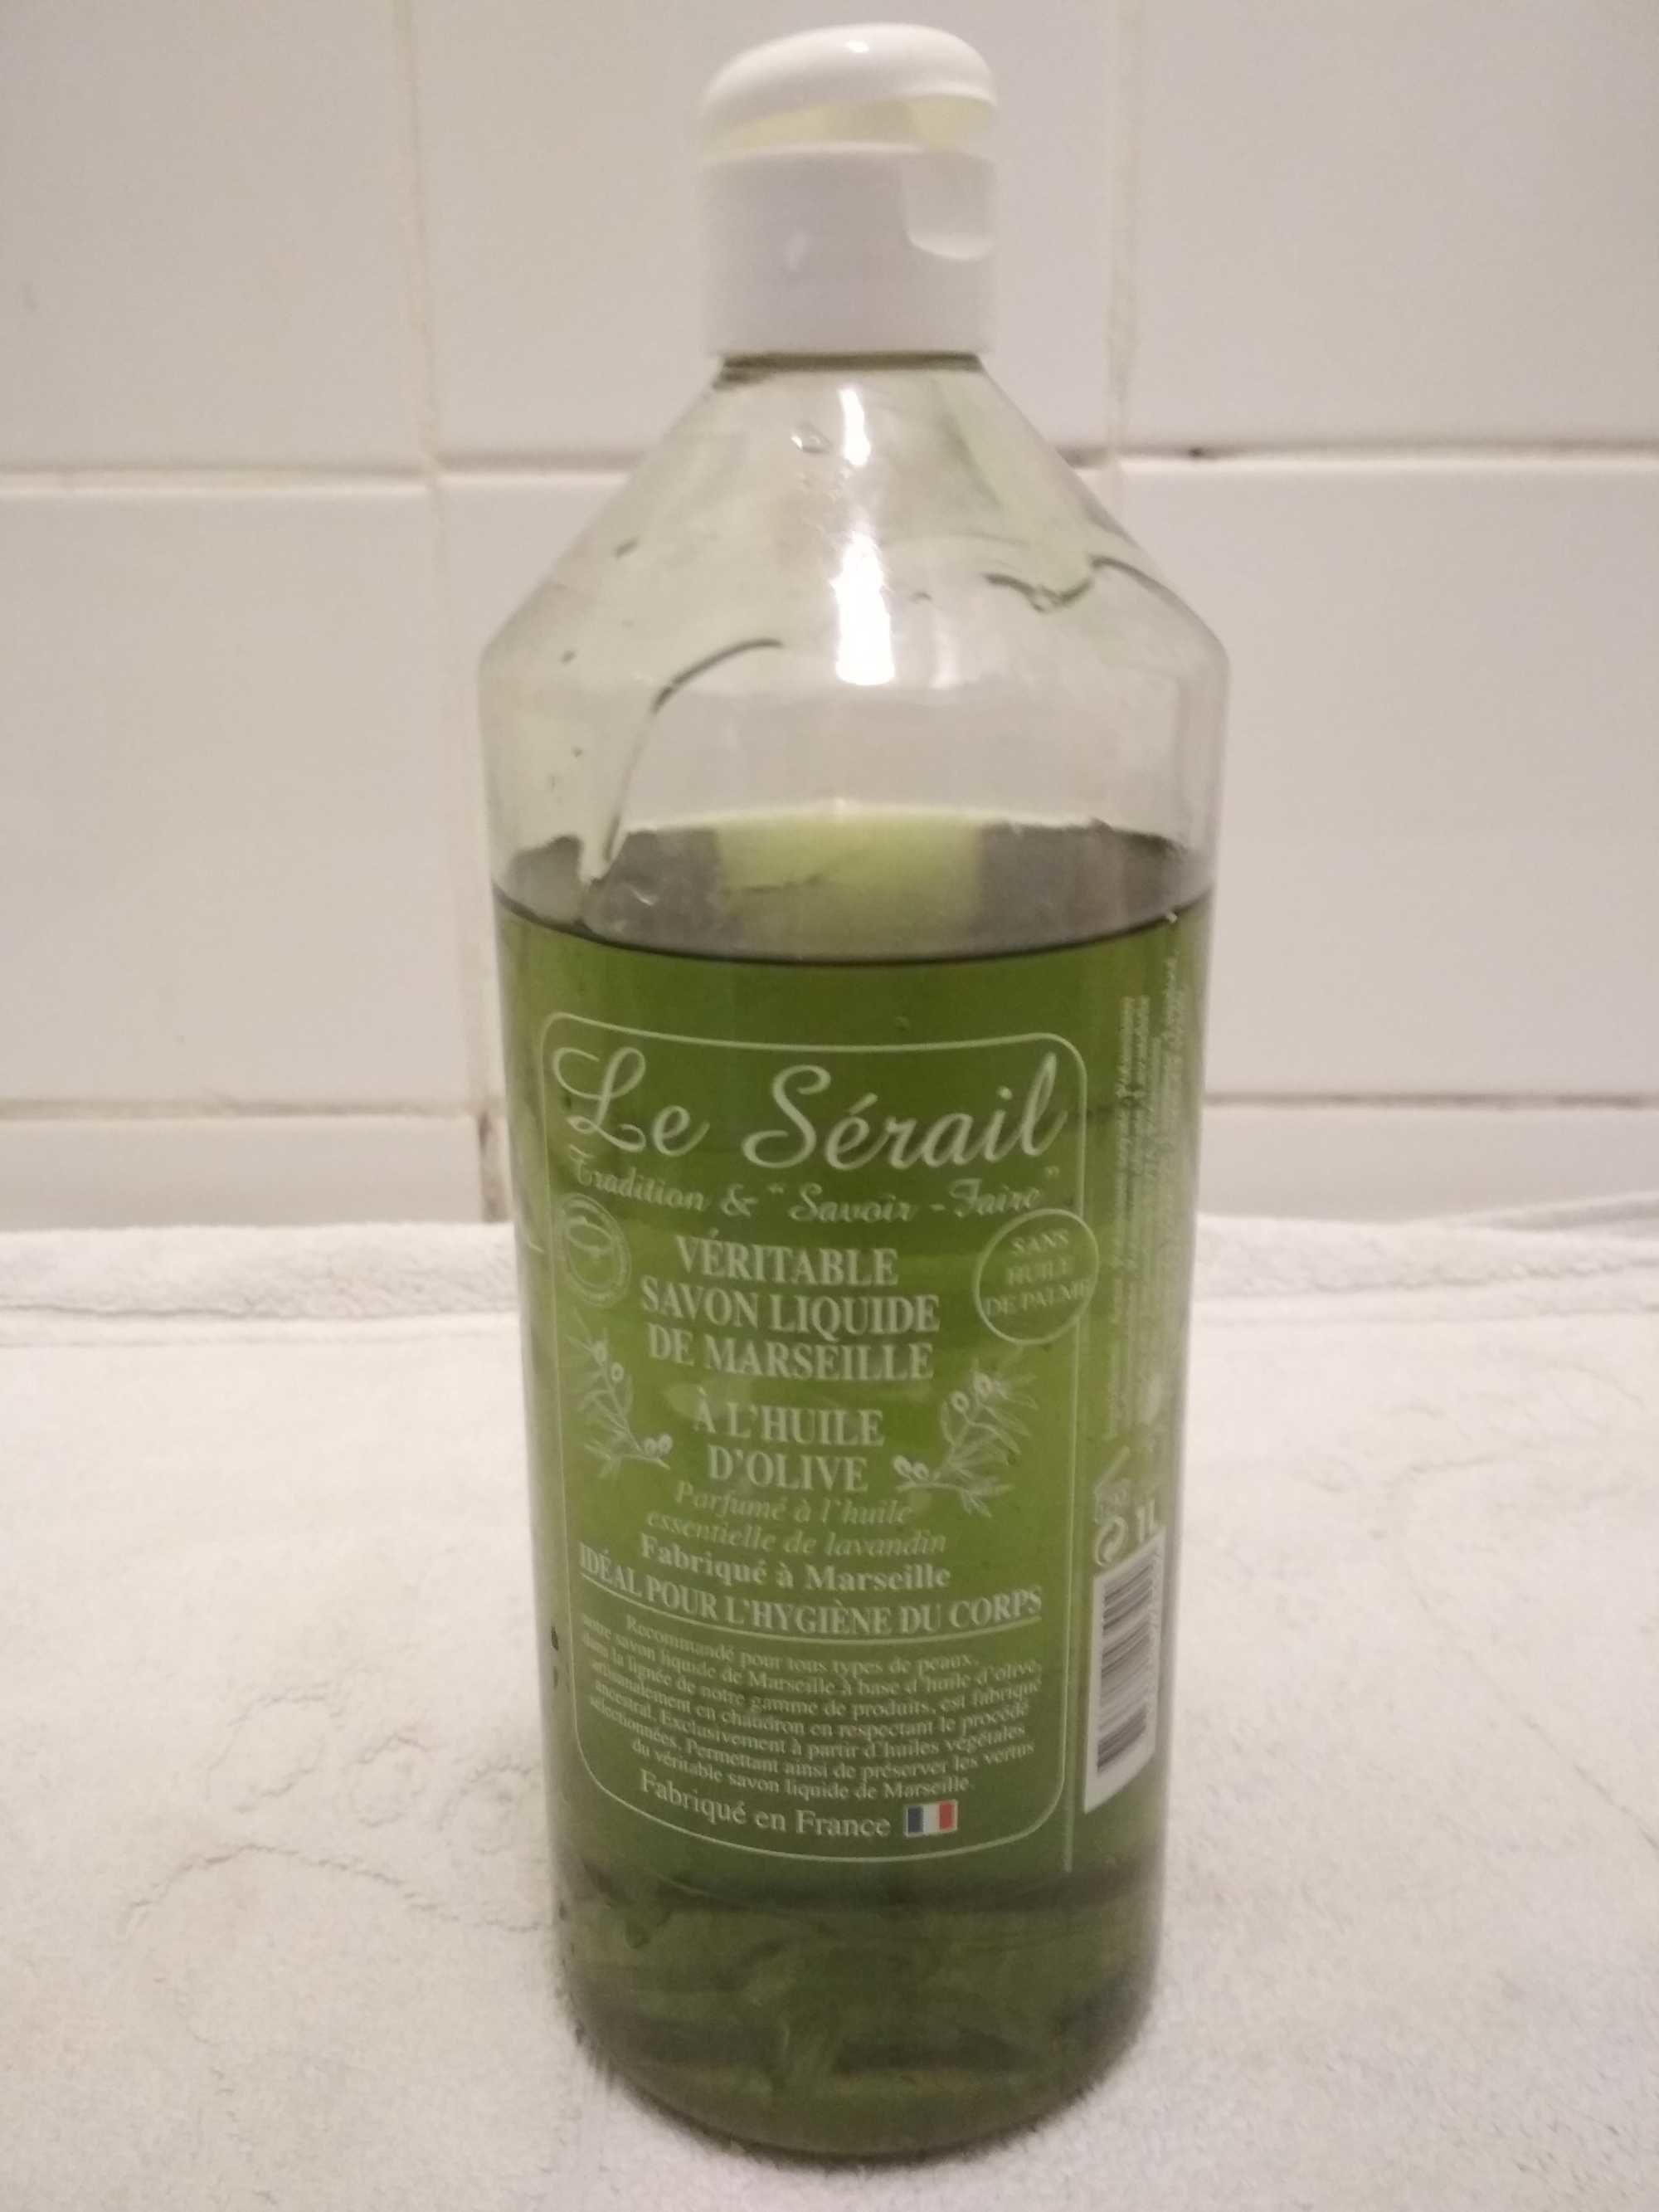 Véritable savon liquide de Marseille a l'huile d'olive Le Sérail - Produto - fr